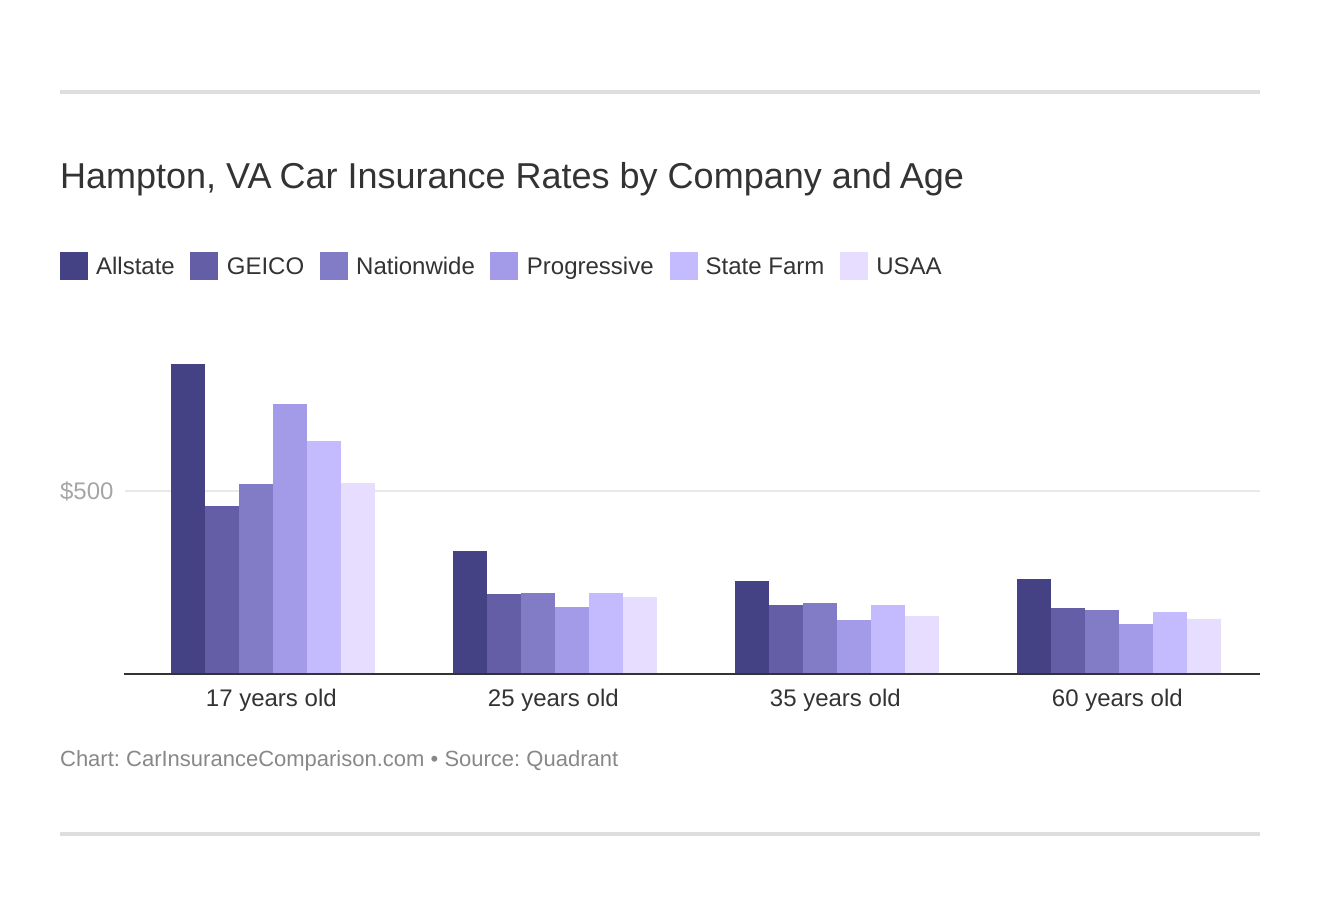 Hampton, VA Car Insurance Rates by Company and Age